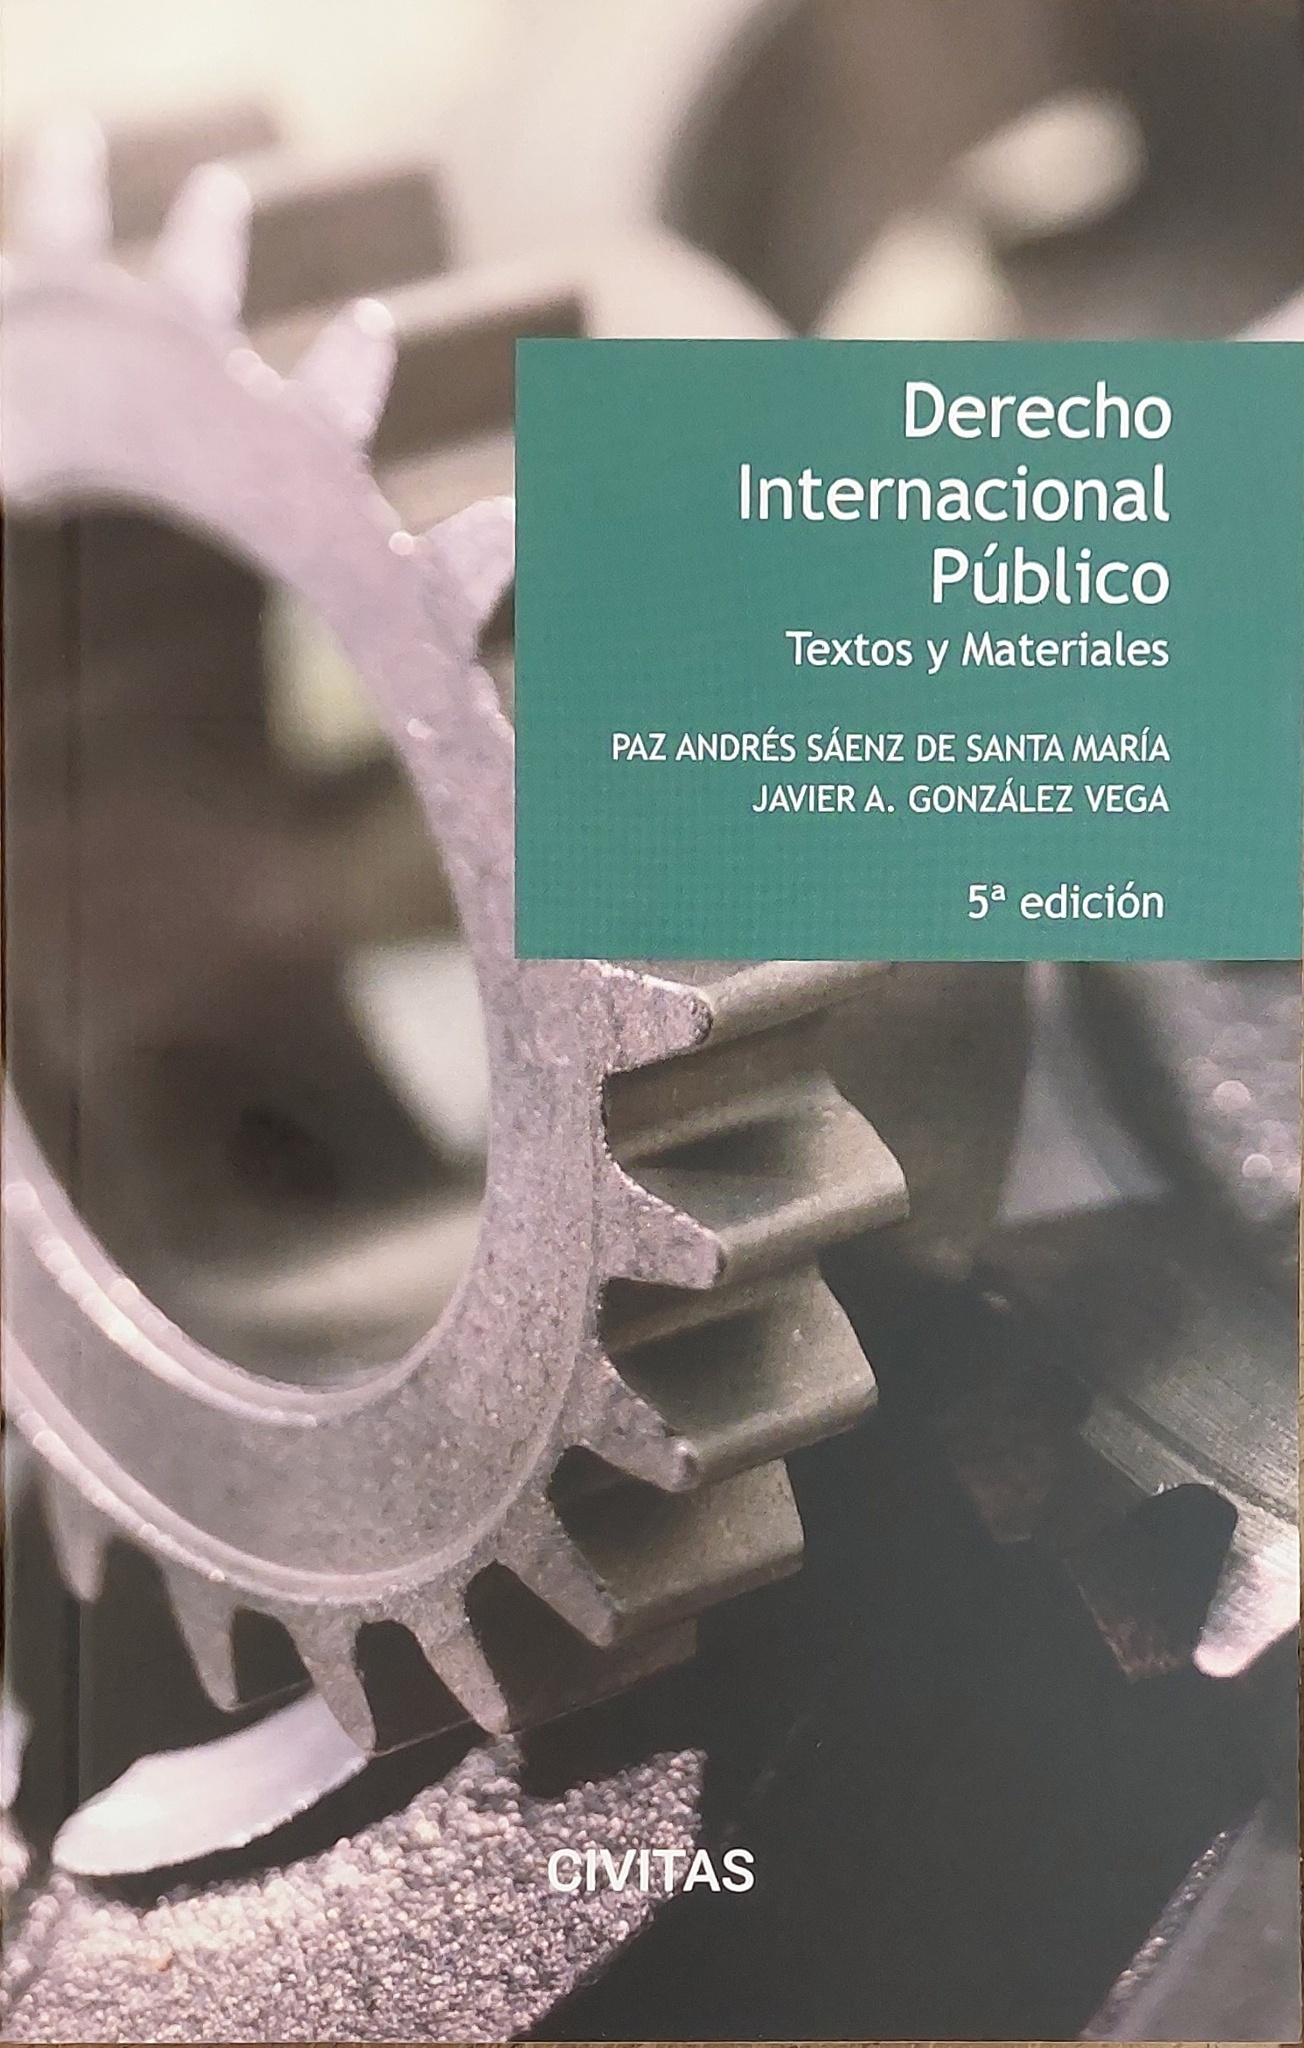 Derecho internacional publico. Textos y materiales